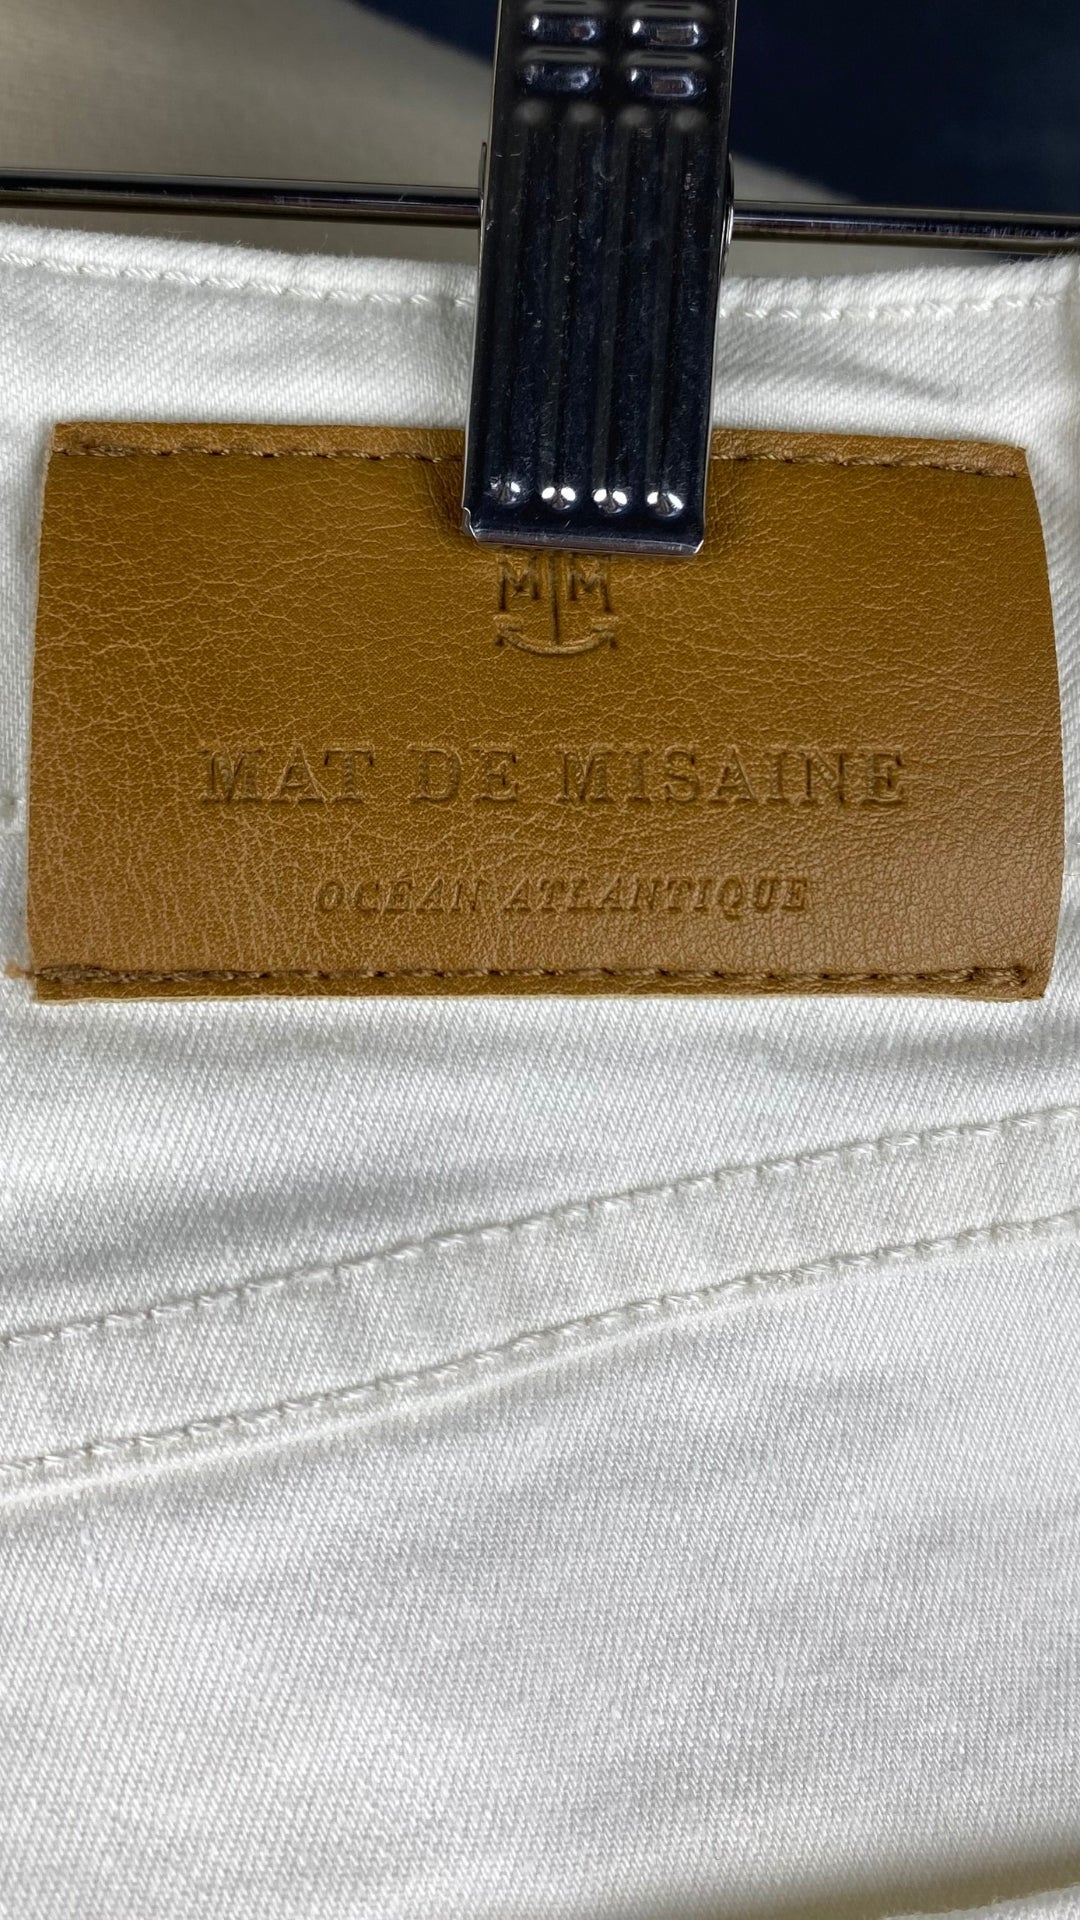 Pantalon crème à jambe droite poches plaquées, Mat de Misaine, taille 34 (xs). Vue de l'étiquette en cuir à l'arrière.